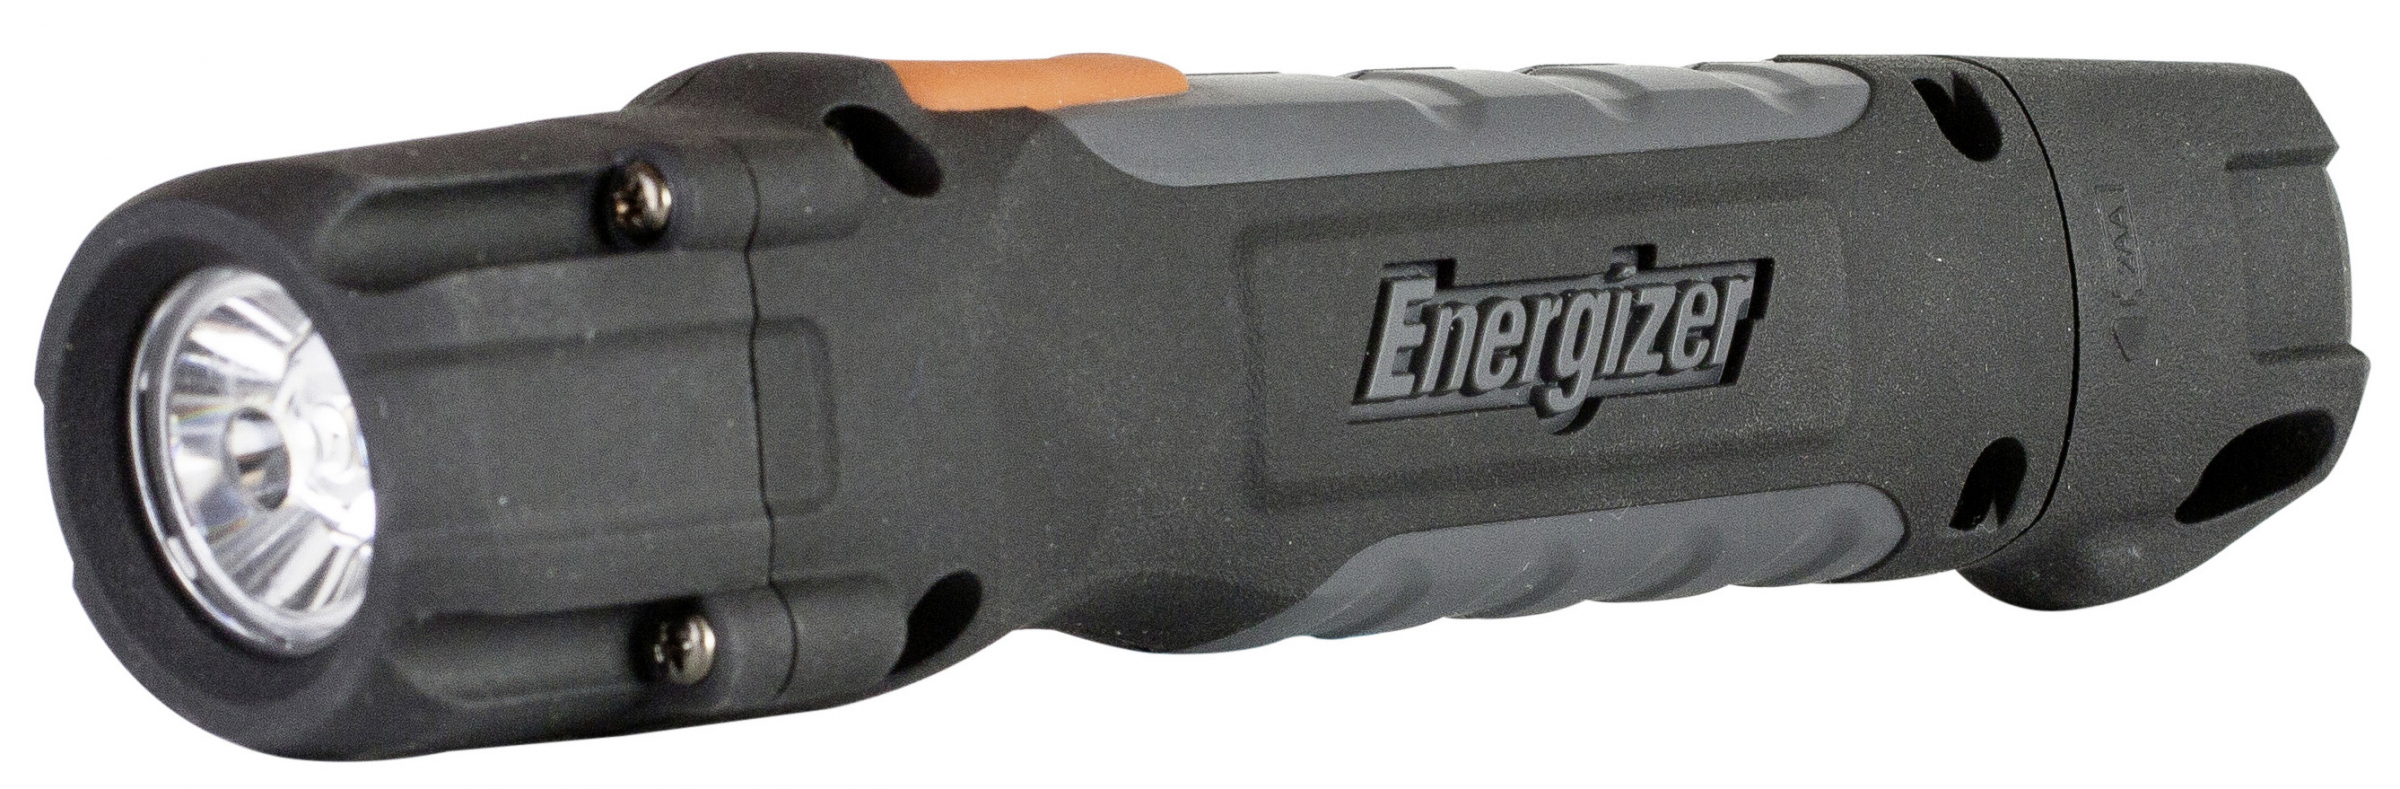 Energizer torch Hardcase Pro 2AA LED inkl. 2x AA 250 Lumen